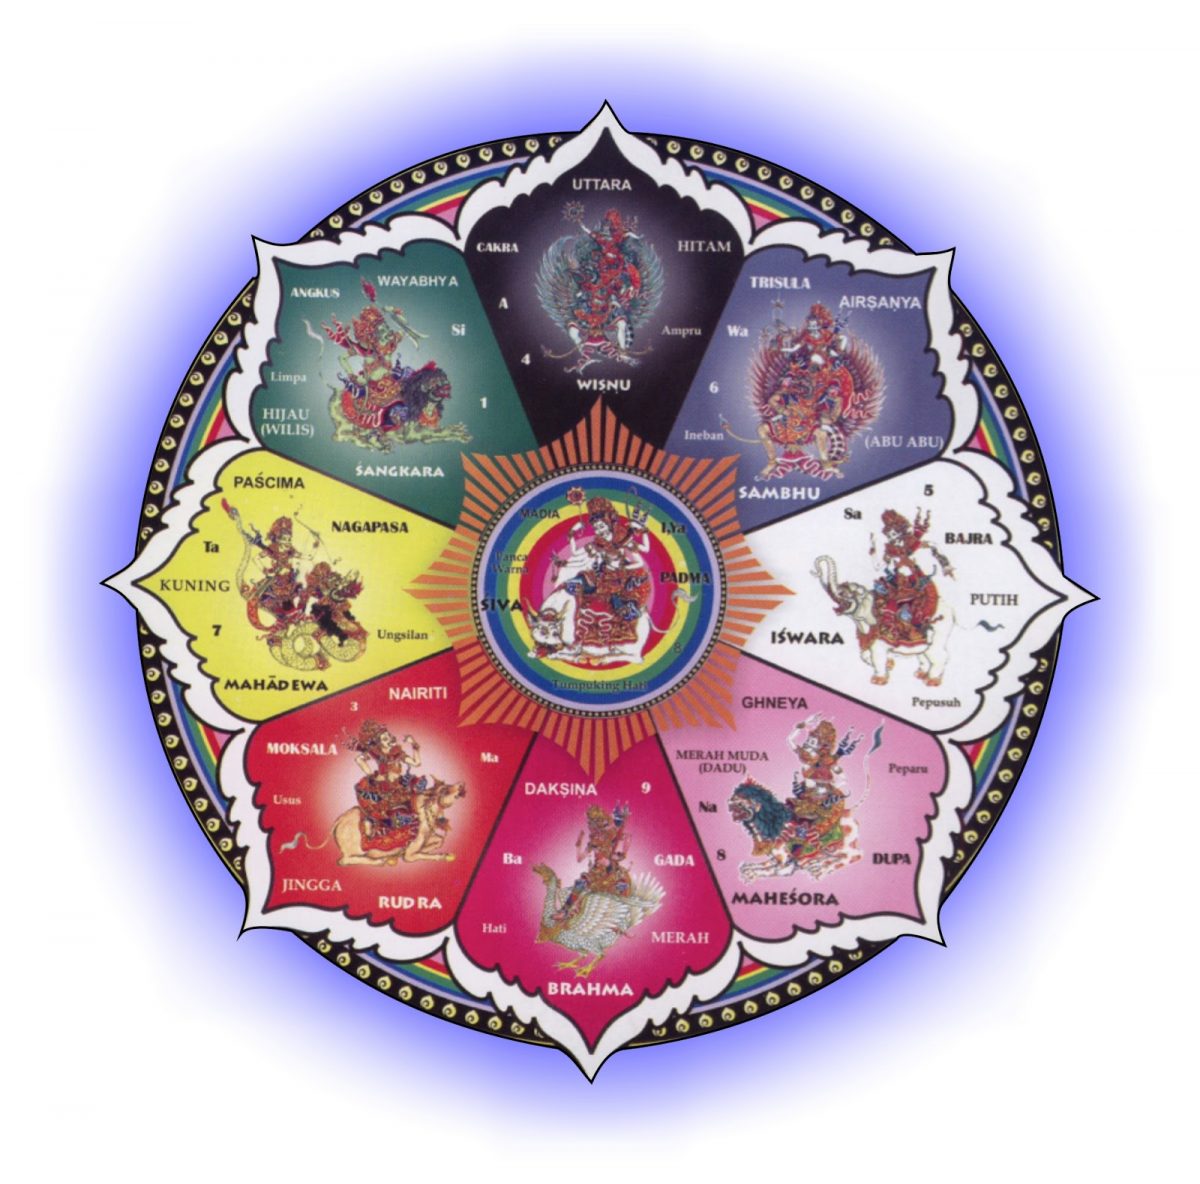 9-nama-dewa-hindu-dalam-konsep-nawa-sanga-haloedukasi